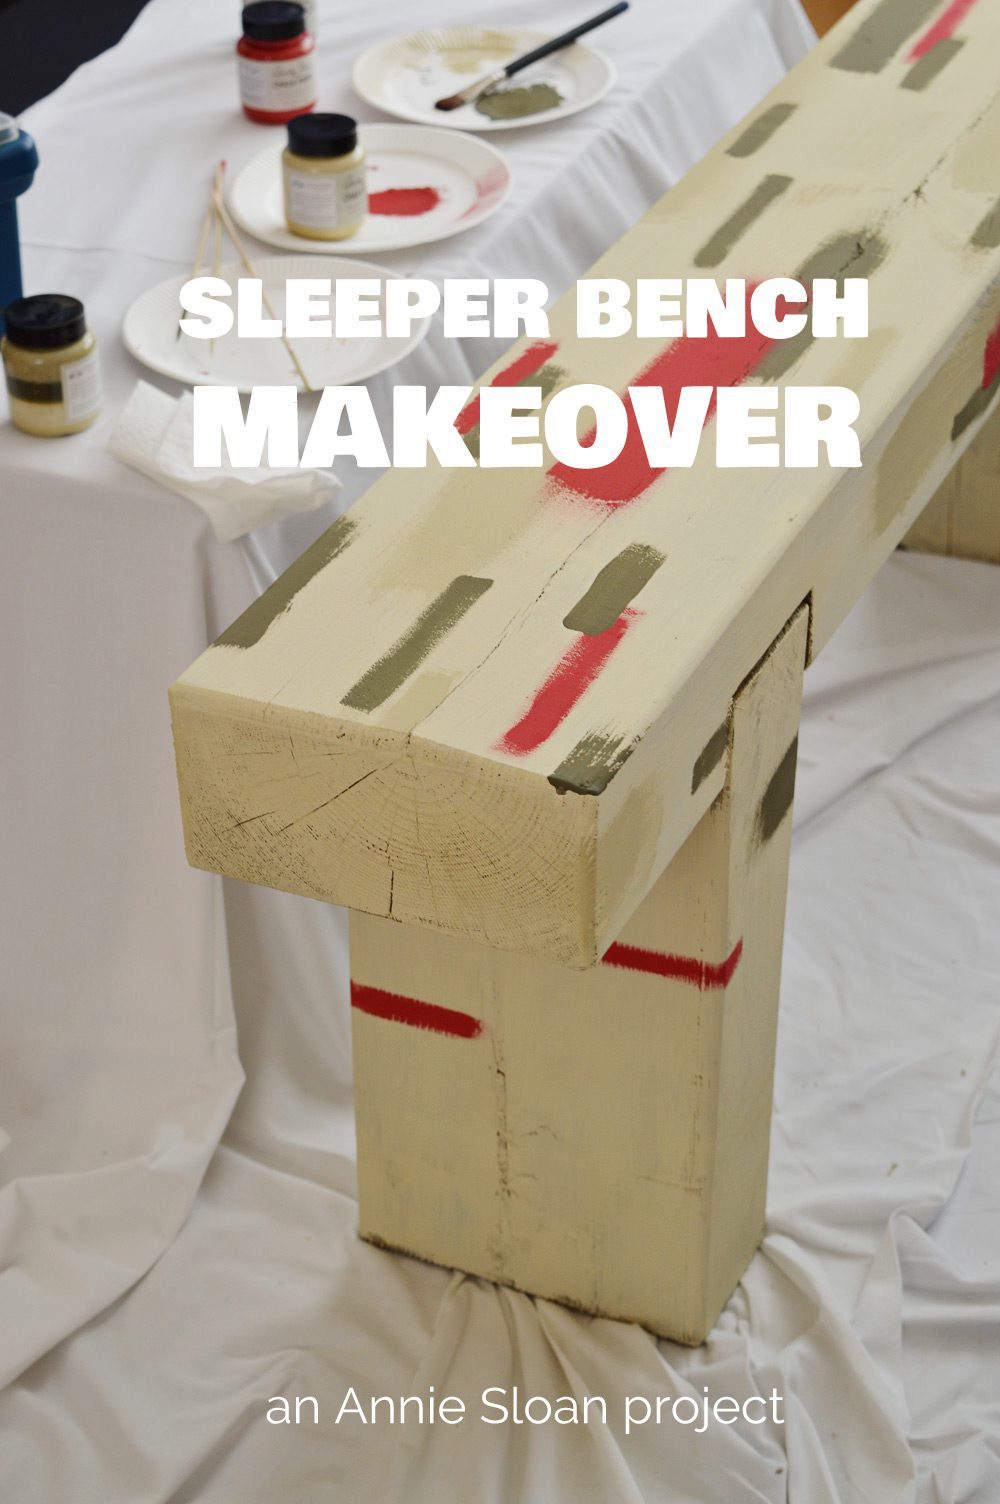 Annie Sloan sleeper bench makeover